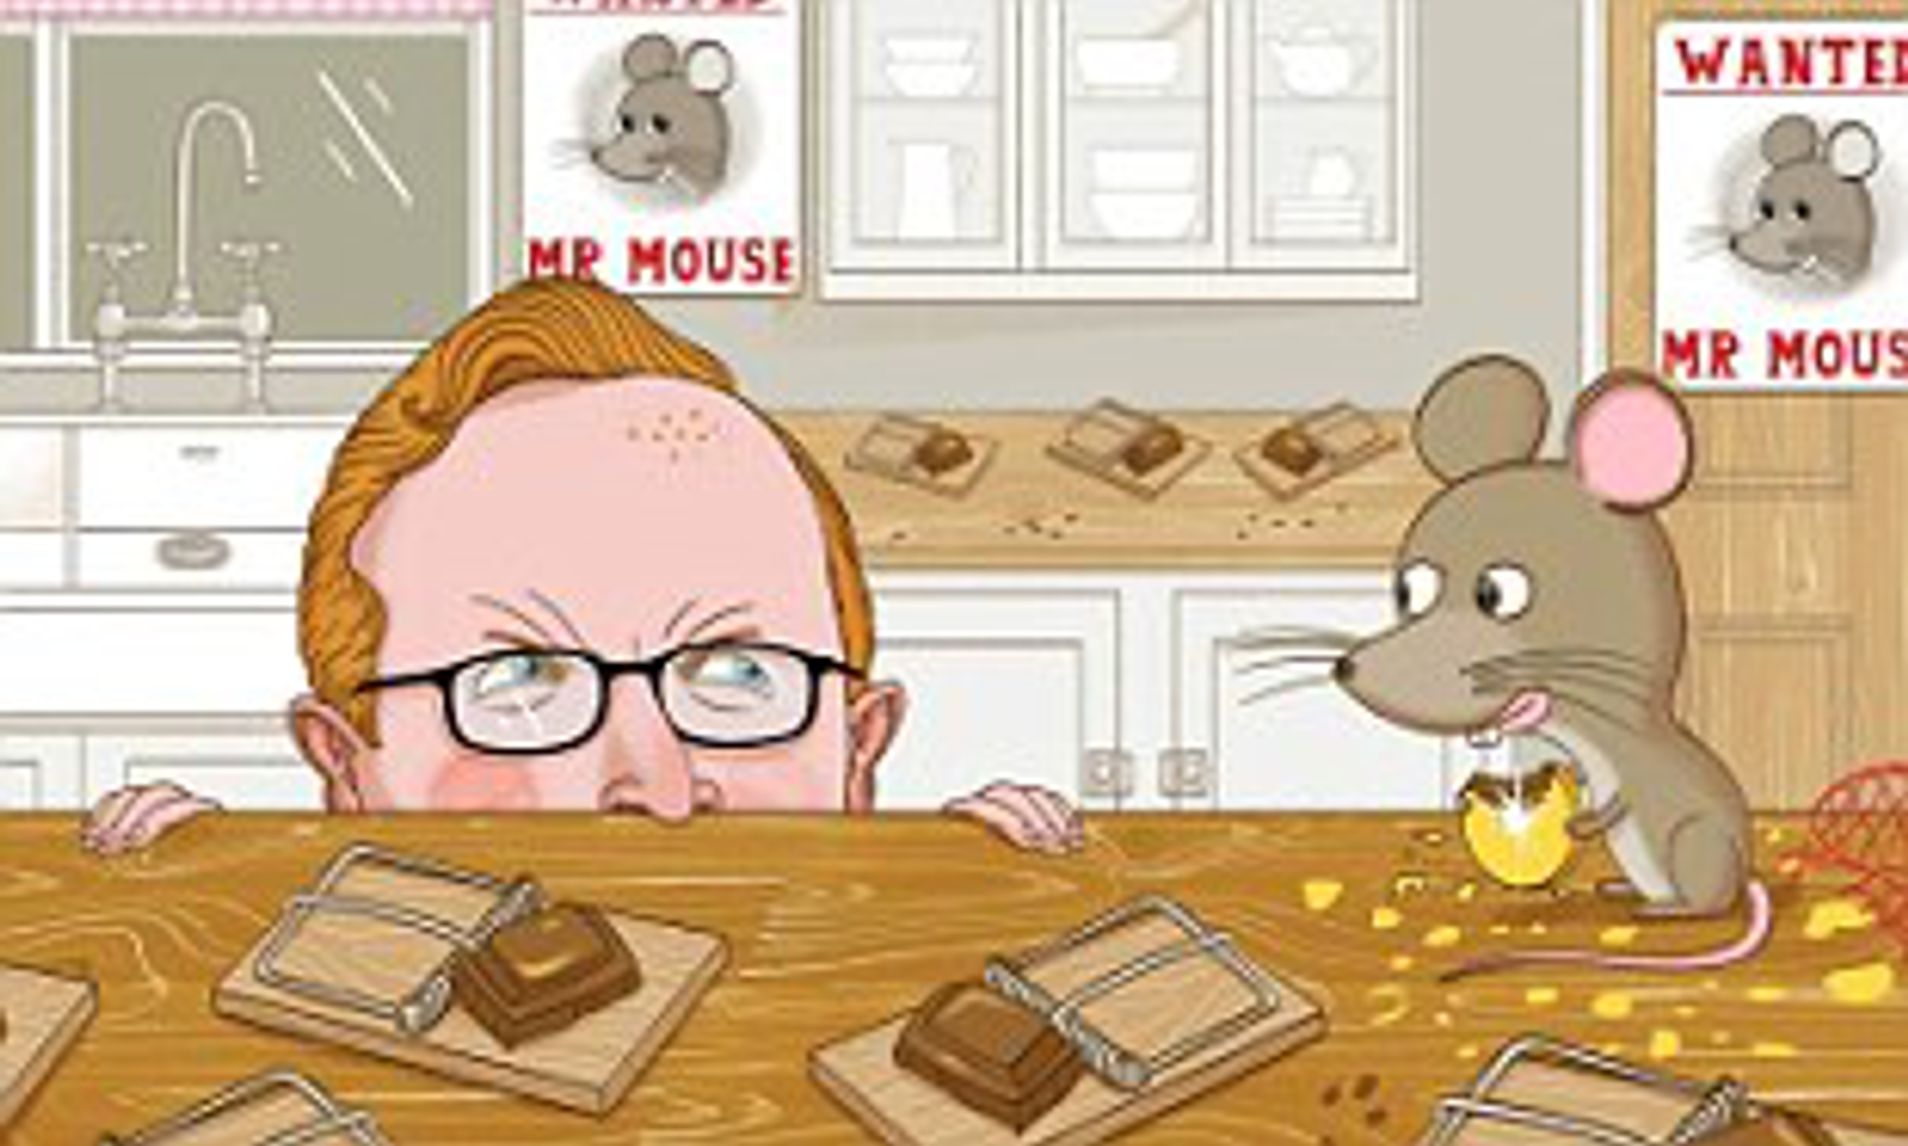 Hustler mouse trap cartoon